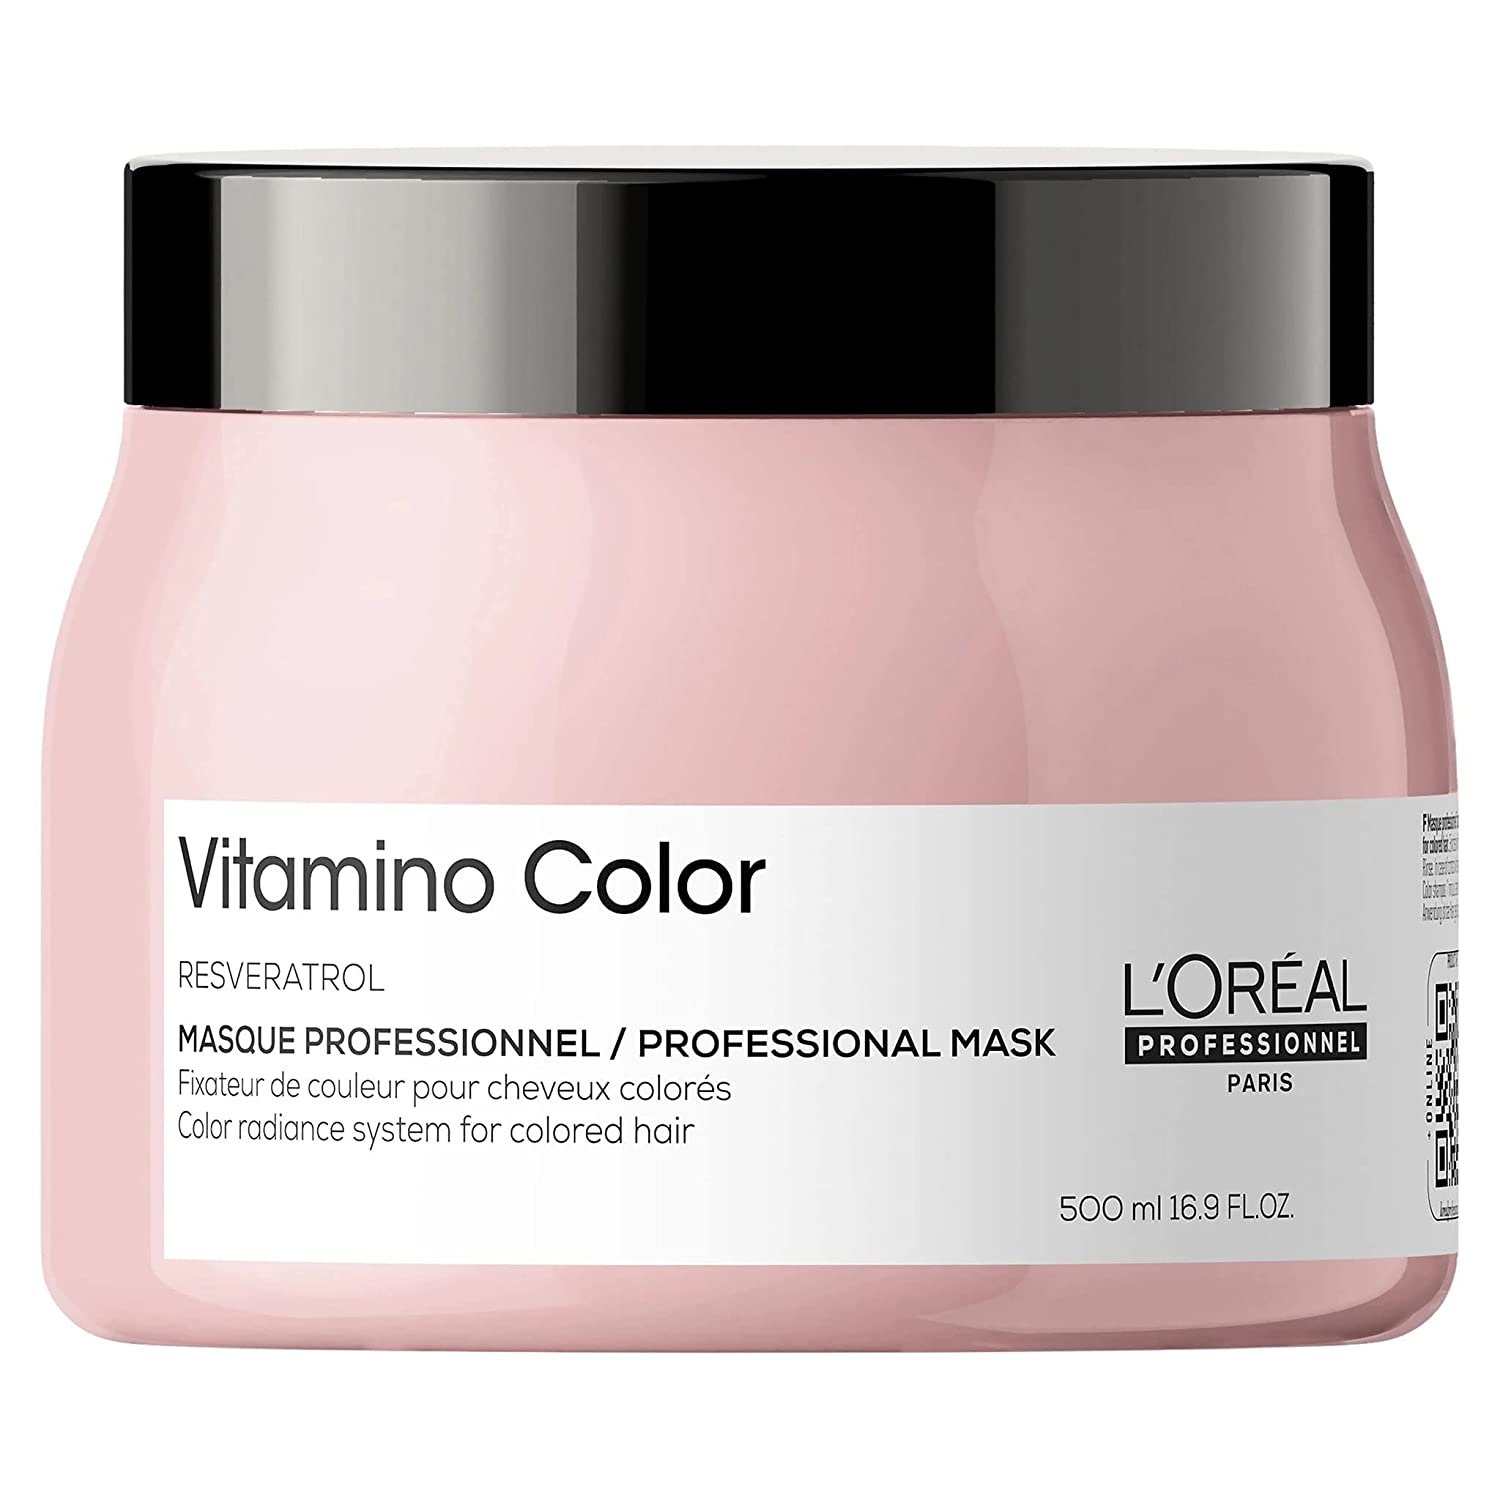 L'Oreal Professionnel Expert Vitamino Color Maske 500ml